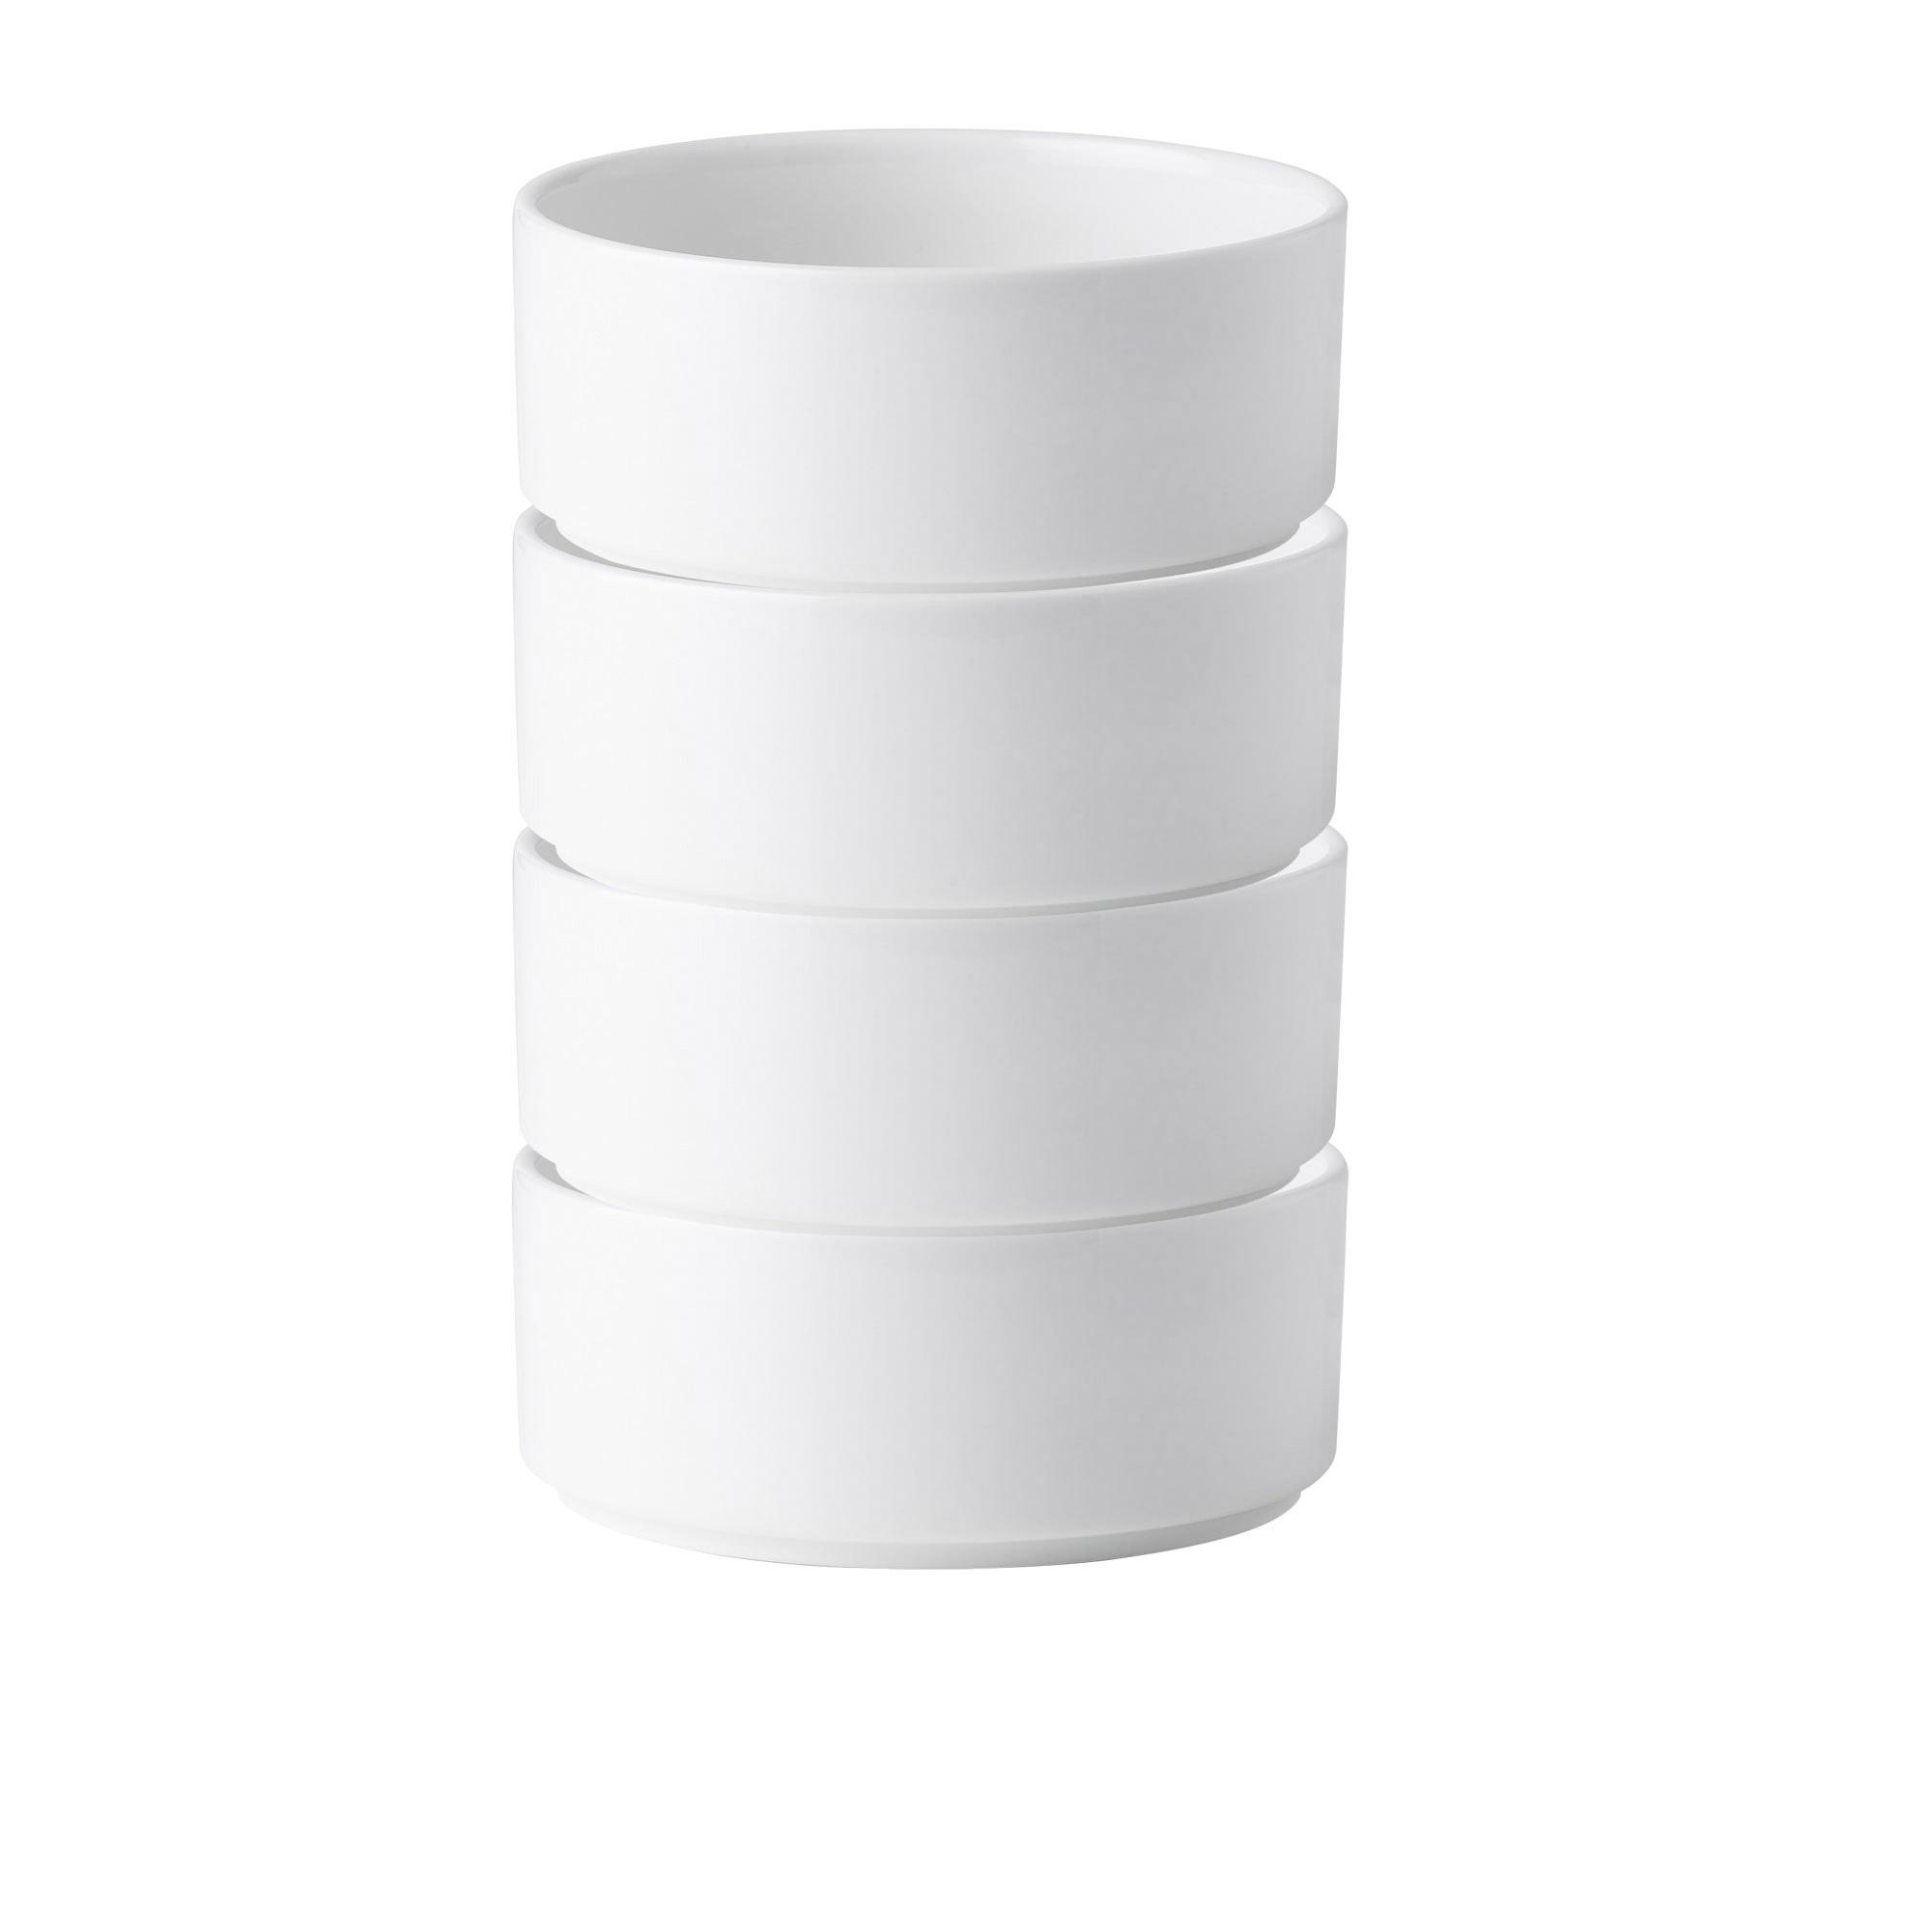 Noritake Stax White Cereal Bowl Set of 4 Image 3